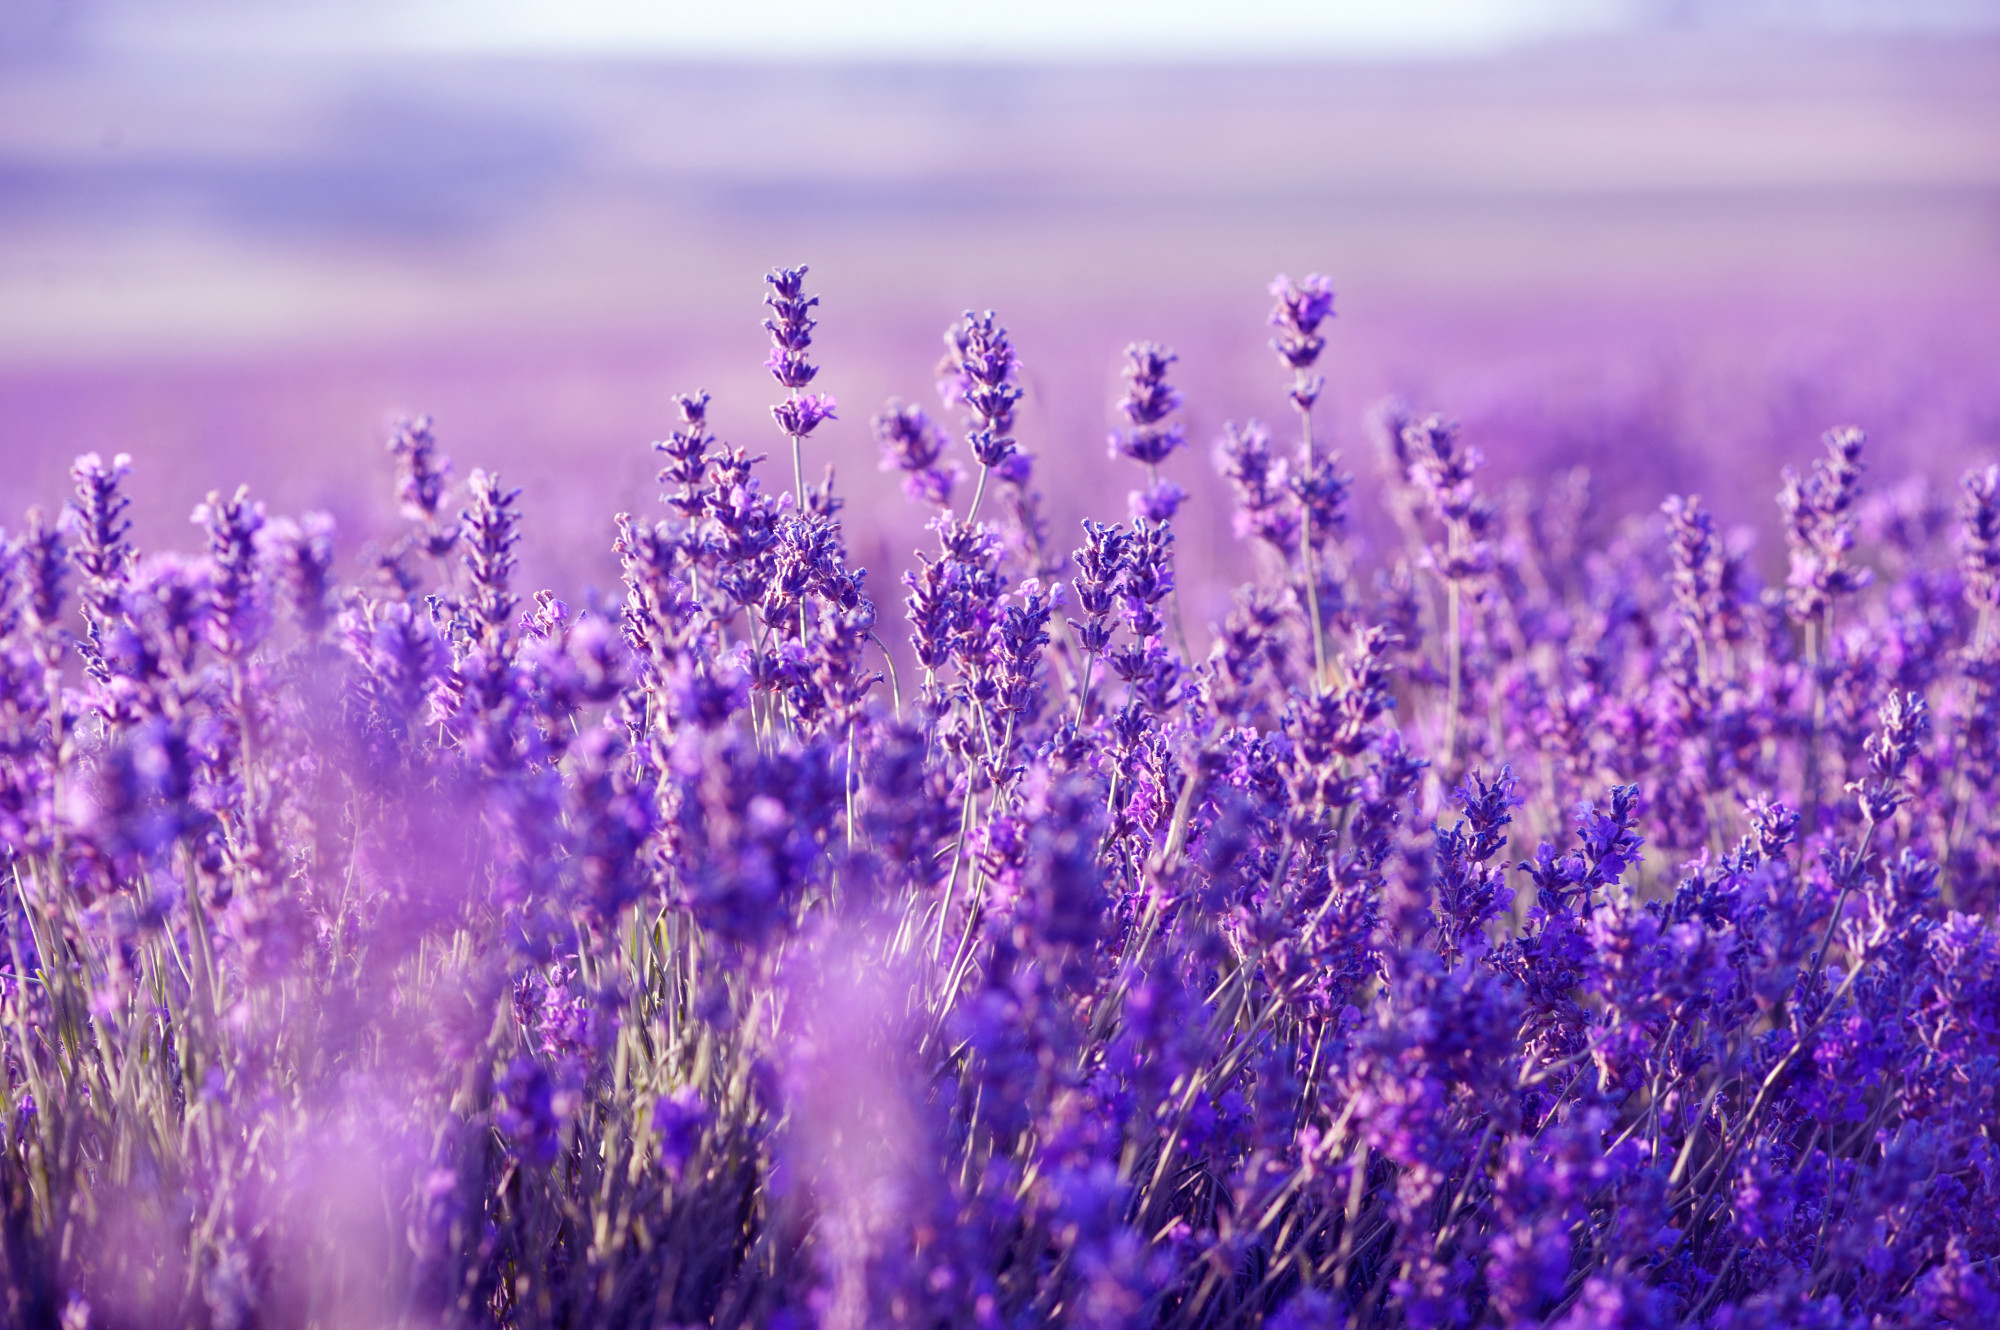 Hình nền Lavender miễn phí sẽ mang đến cho bạn một không gian sống và làm việc trong lành và thư thái. Hình ảnh cánh đồng Lavender lãng mạn và hoàn hảo này sẽ giúp bạn thư giãn và tập trung vào công việc.